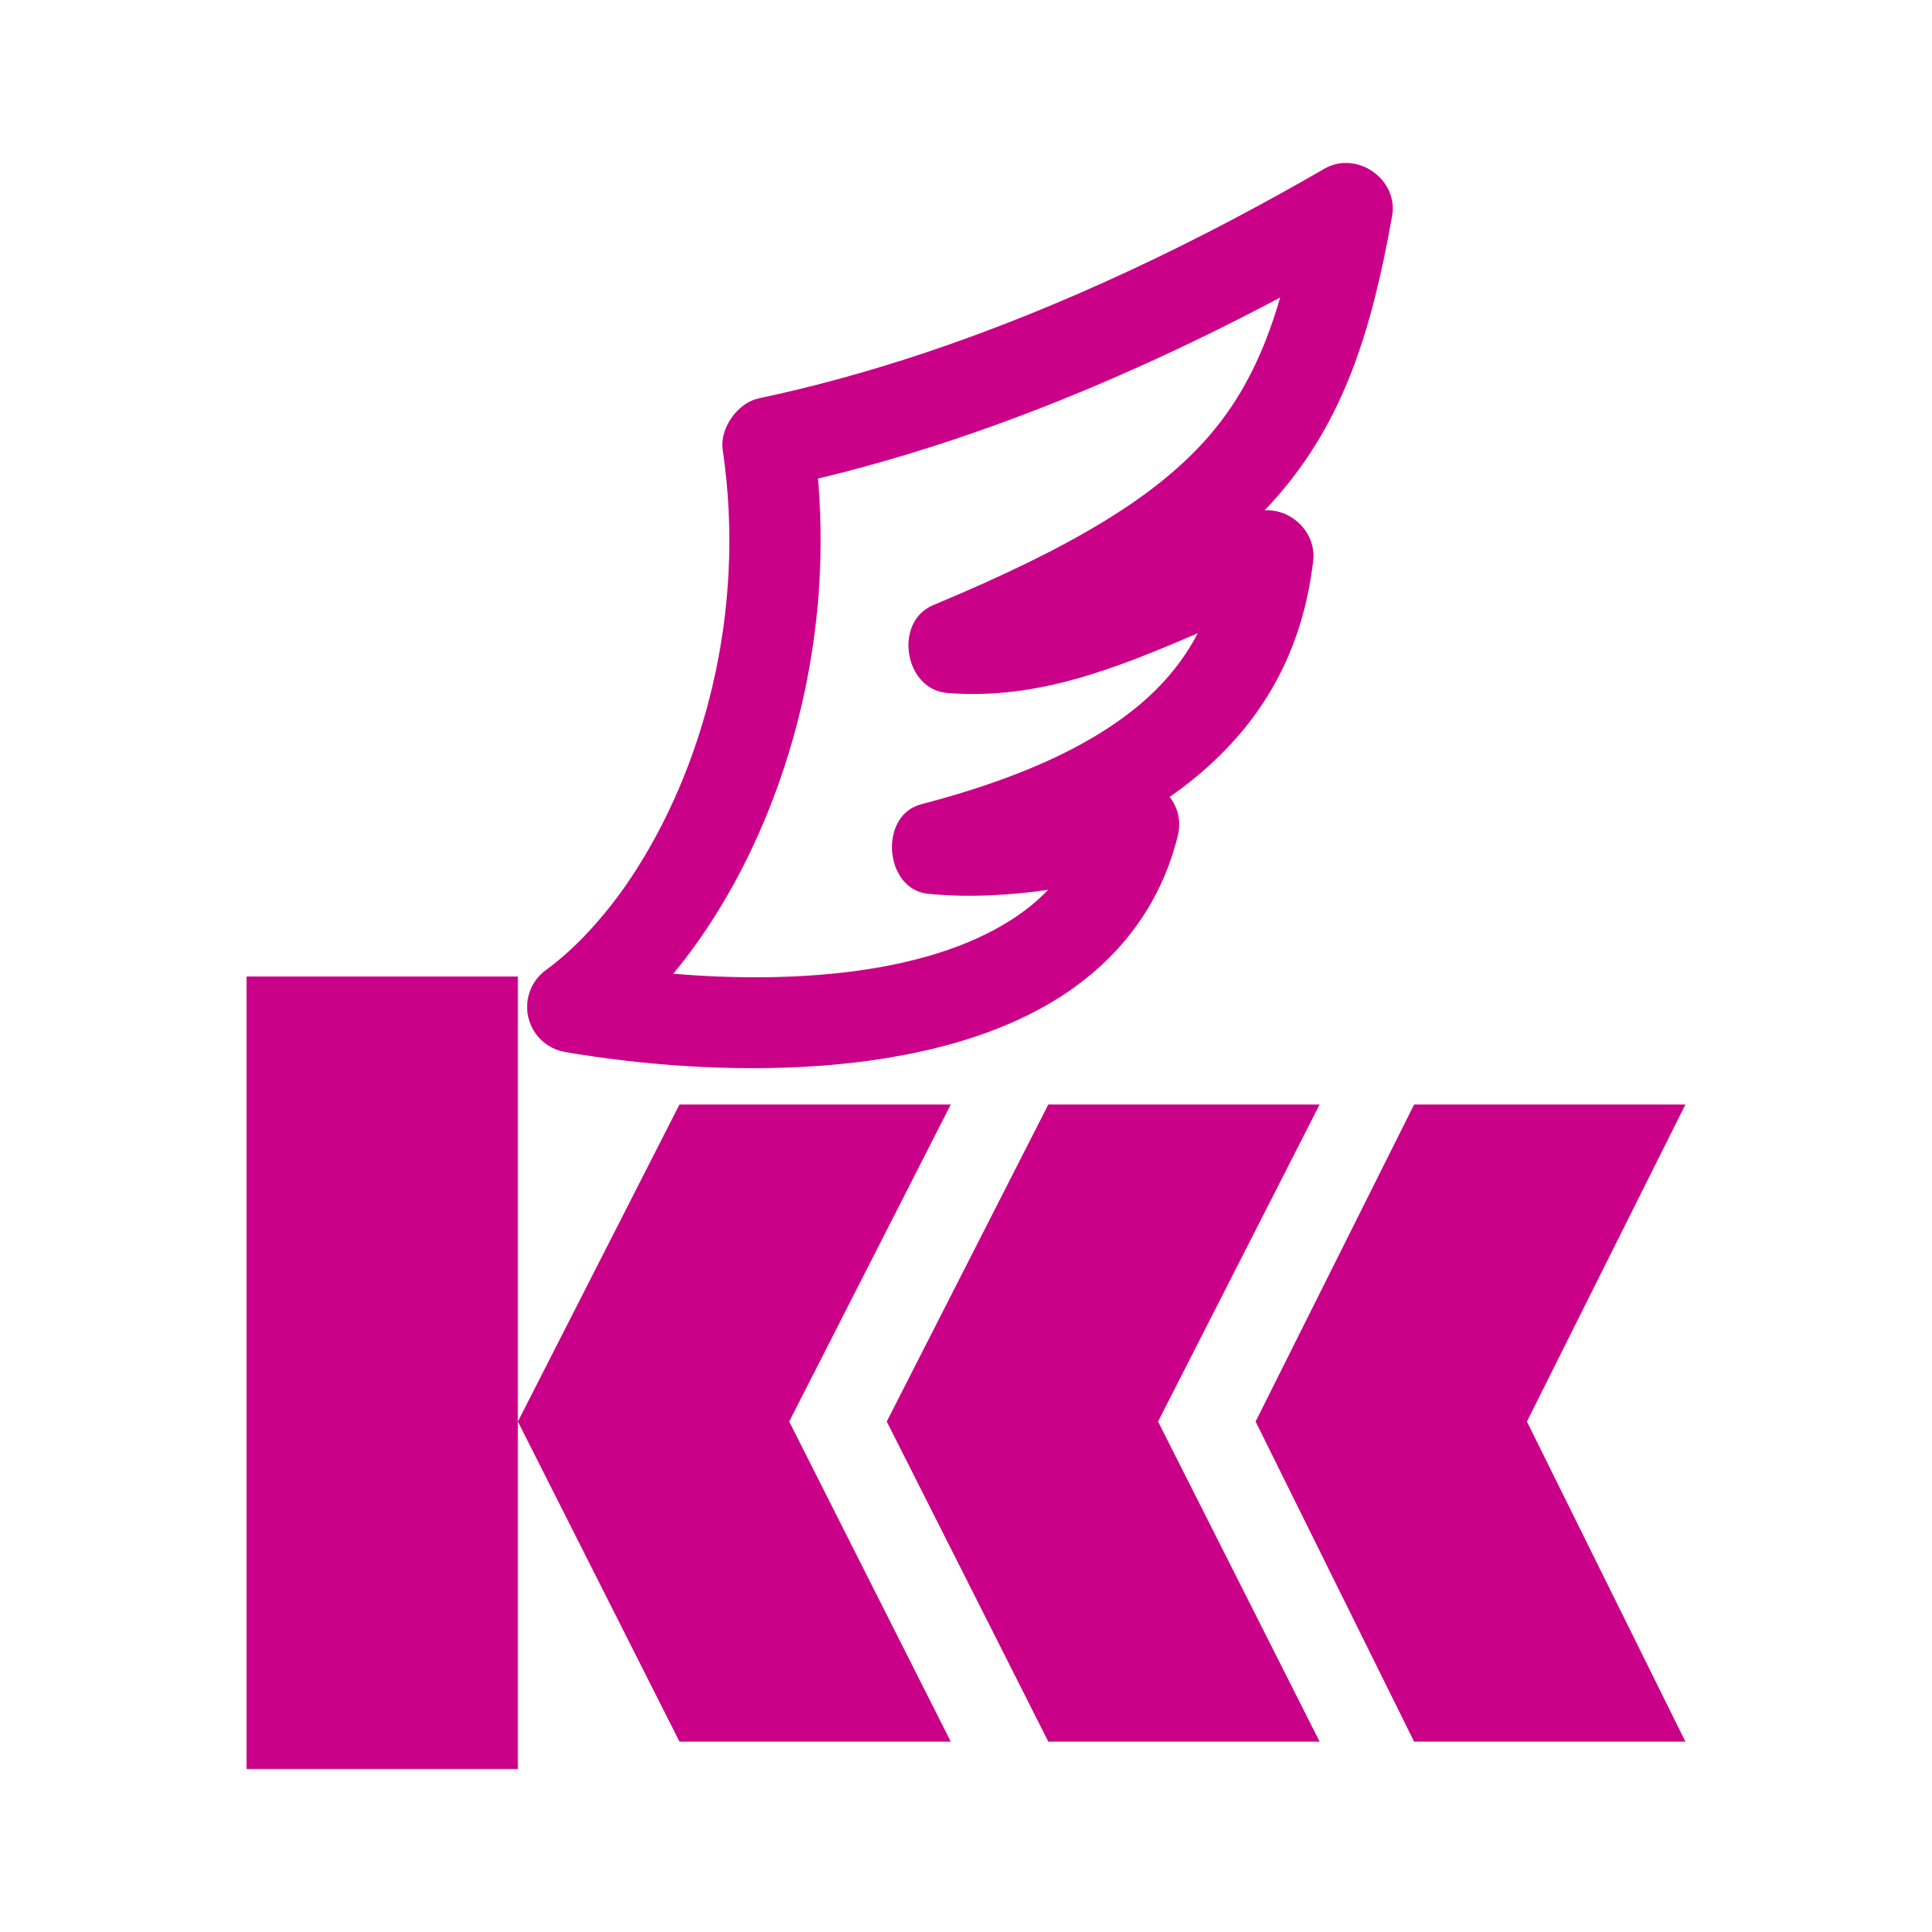 Kkk Logo - KKK Logo PNG Transparent & SVG Vector - Freebie Supply